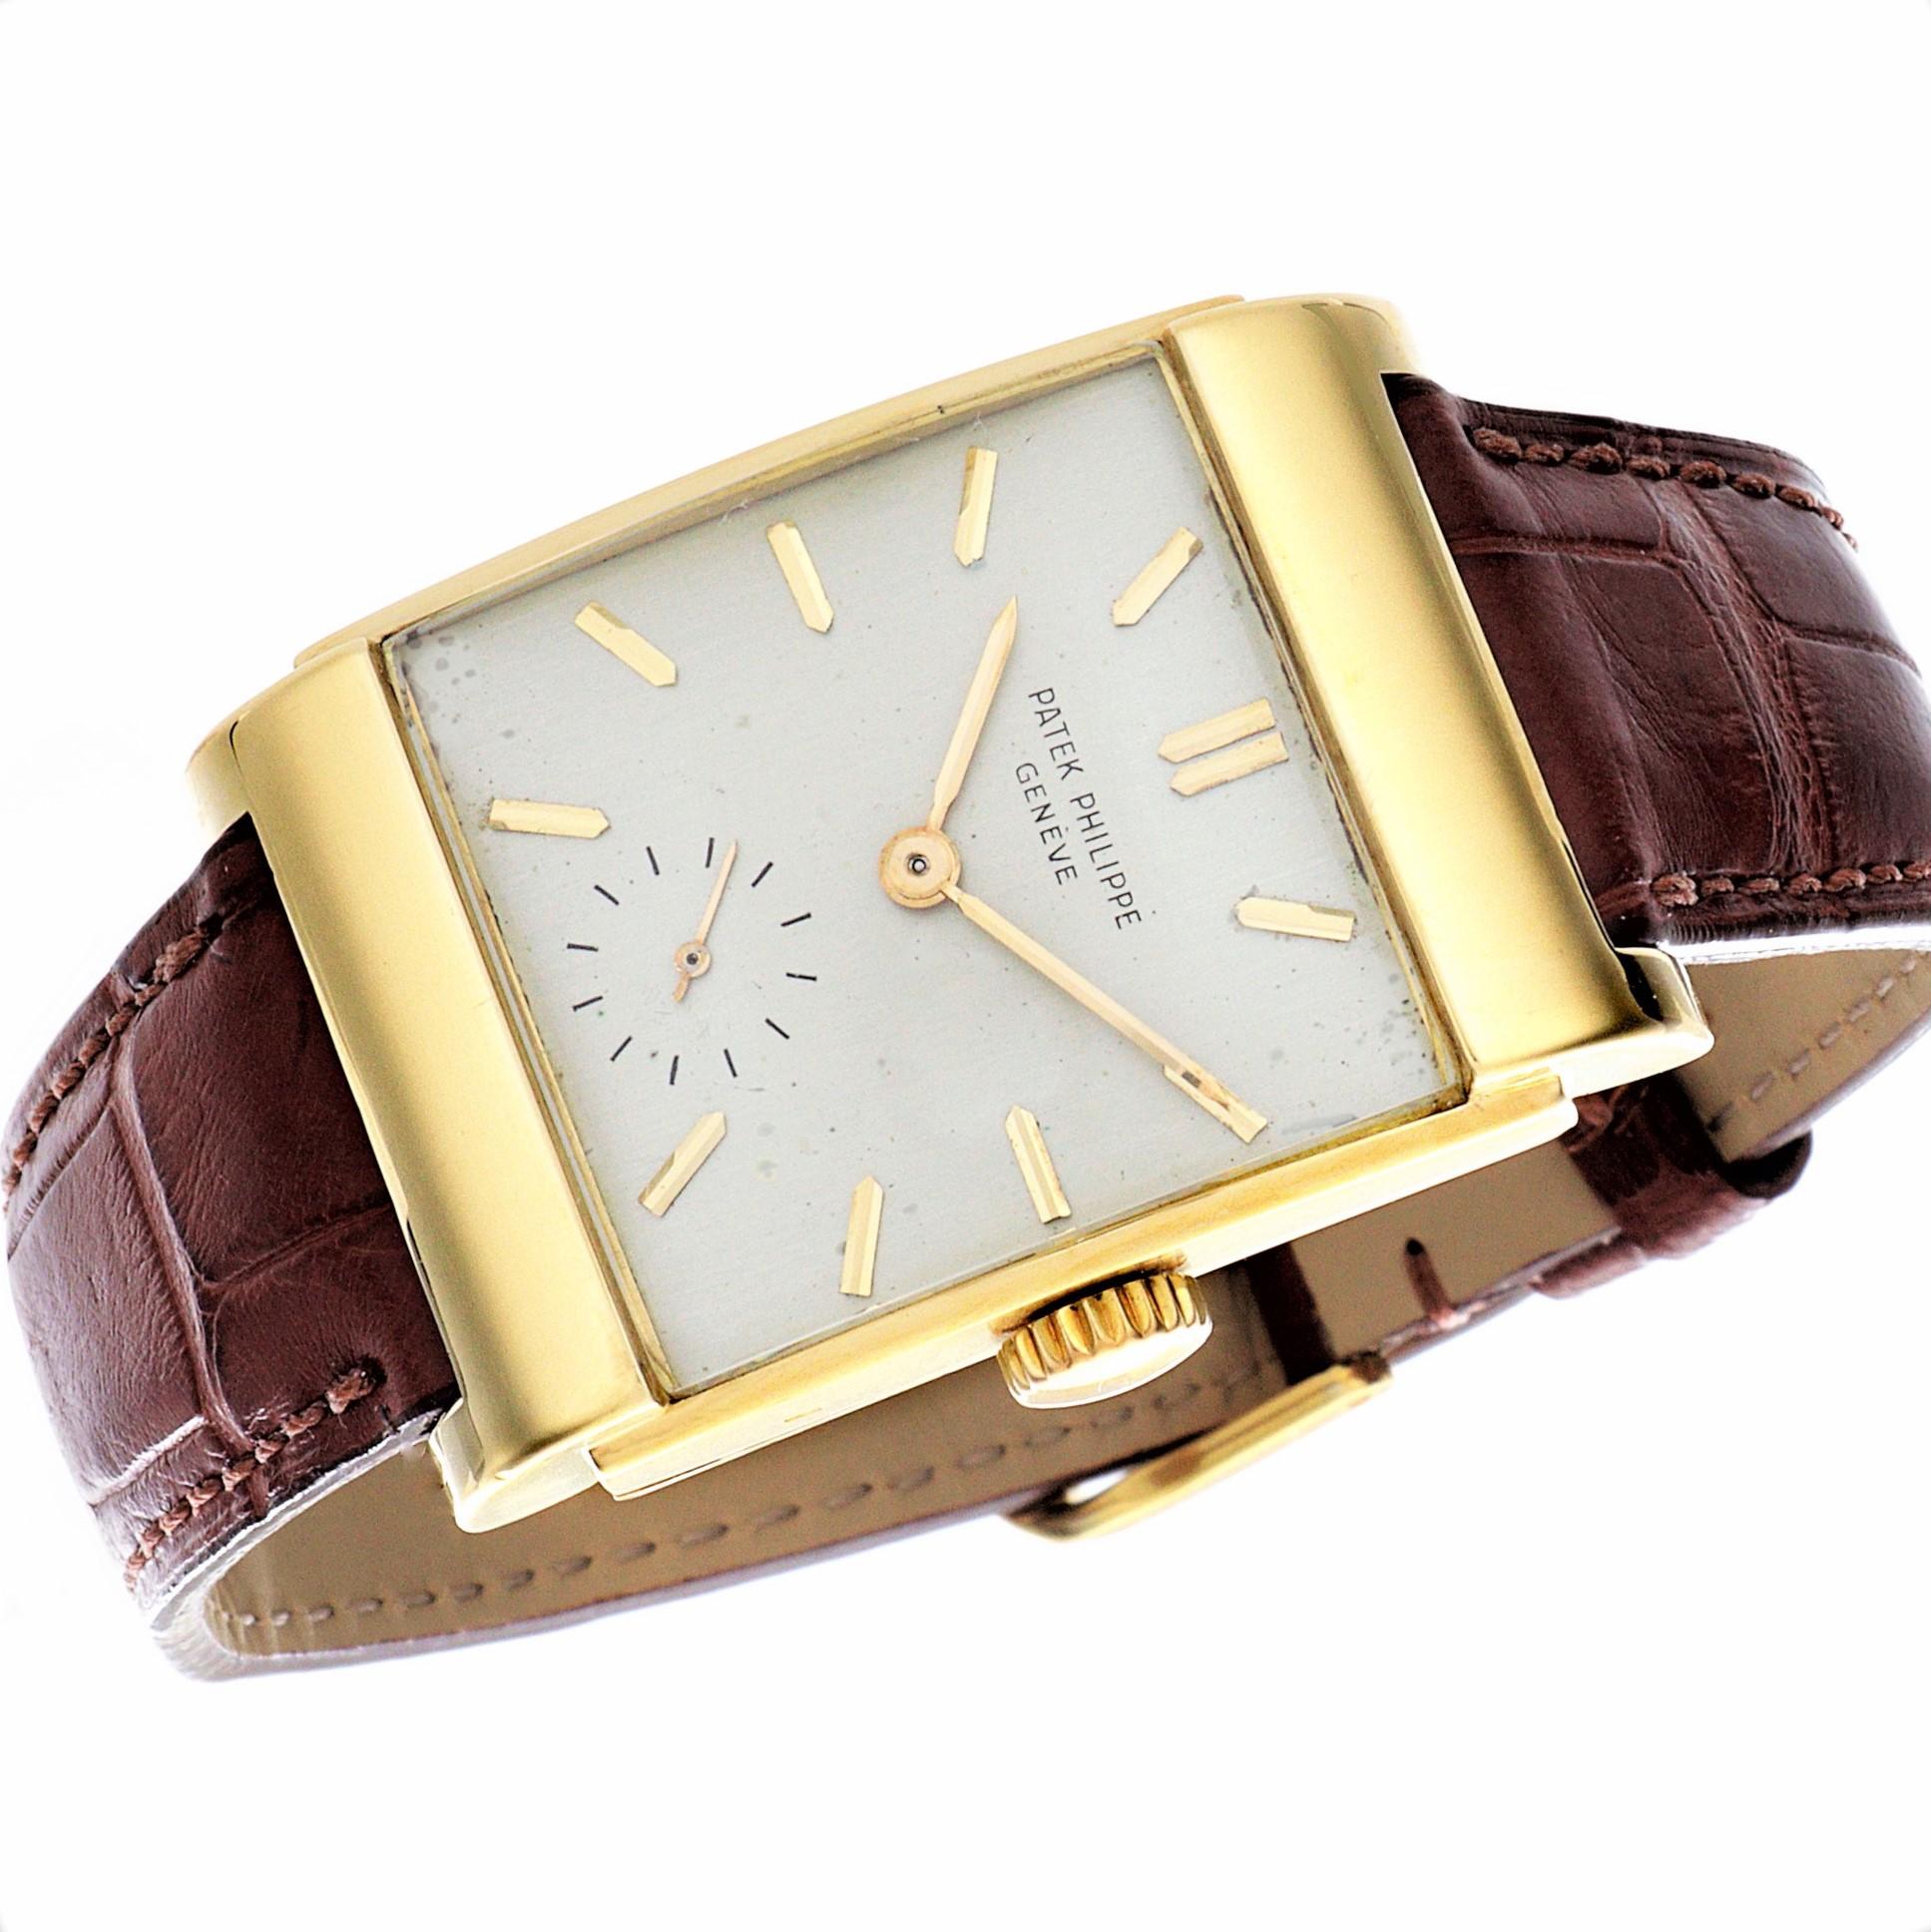 Einleitung:
Patek Philippe 2479J Curved Rectangular Uhr mit gestuftem Gehäuse und halb verdeckten Bandanstößen.  Die Uhr ist aus 18 Karat Gelbgold gefertigt, misst 39 x 26 mm und wurde 1950 hergestellt,  Ausgestattet mit einem Kaliber 9